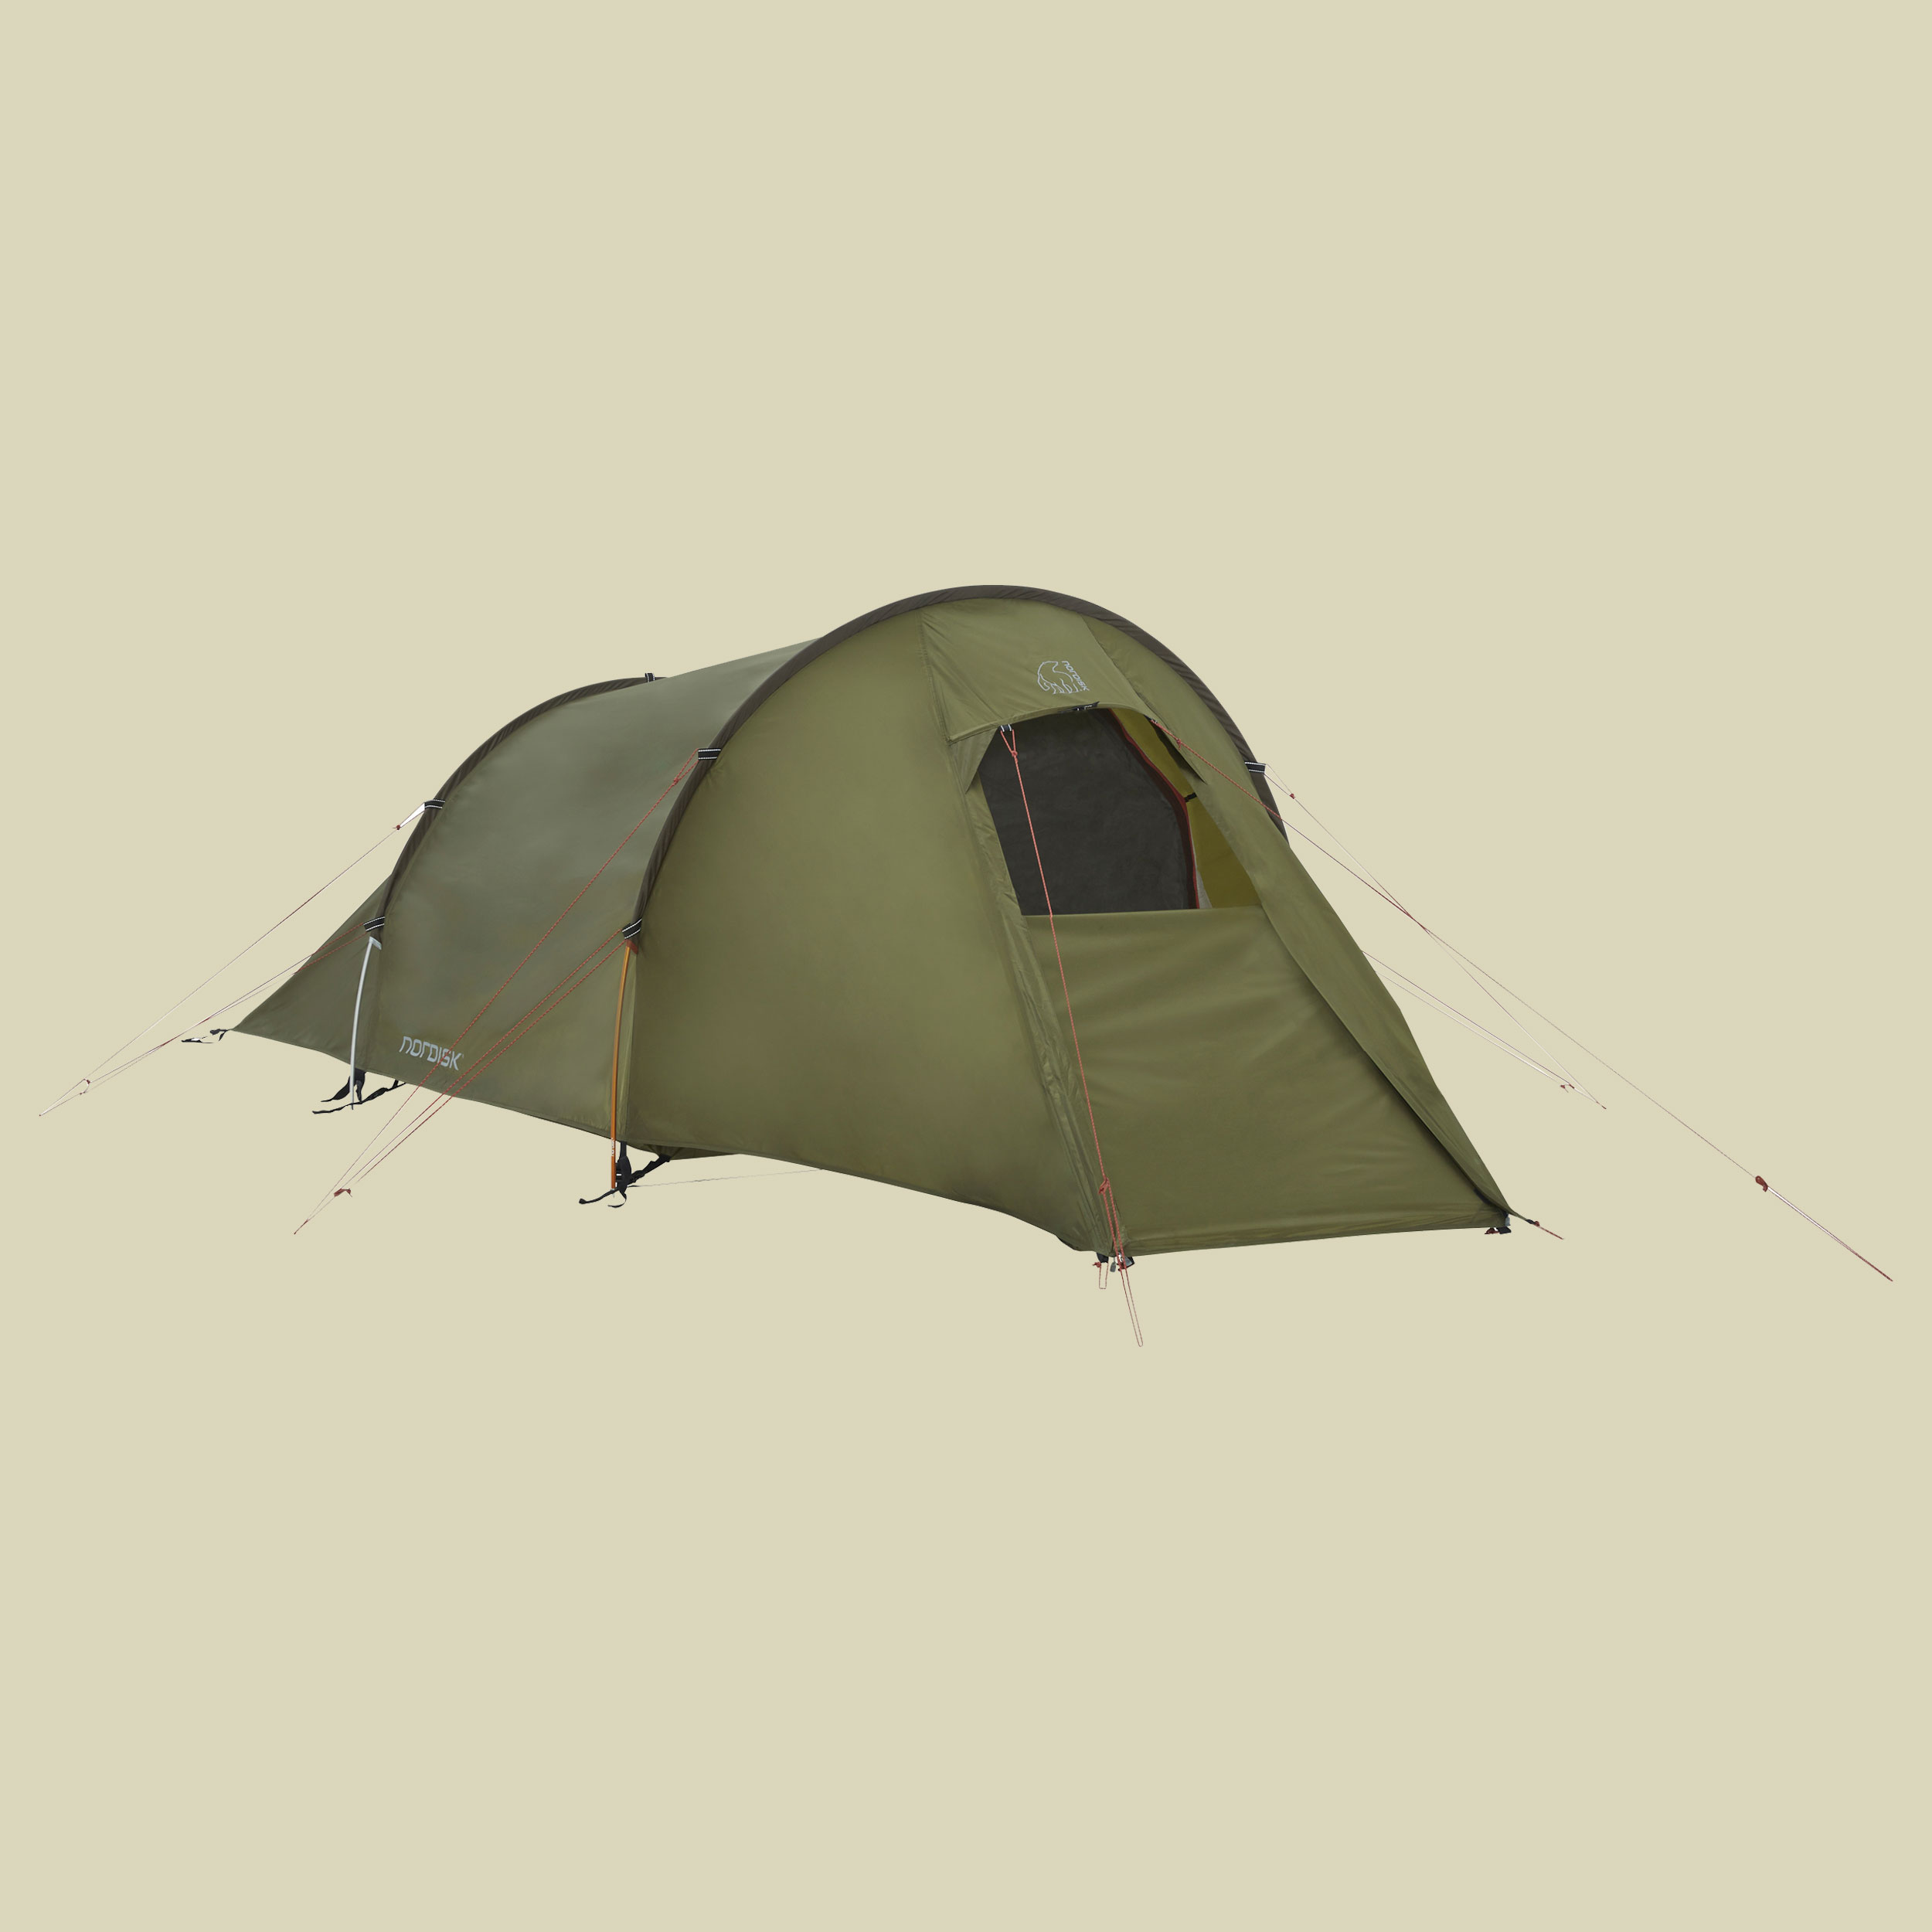 HALLAND 2 PU Tent 2-Personen Zelt Farbe dark olive